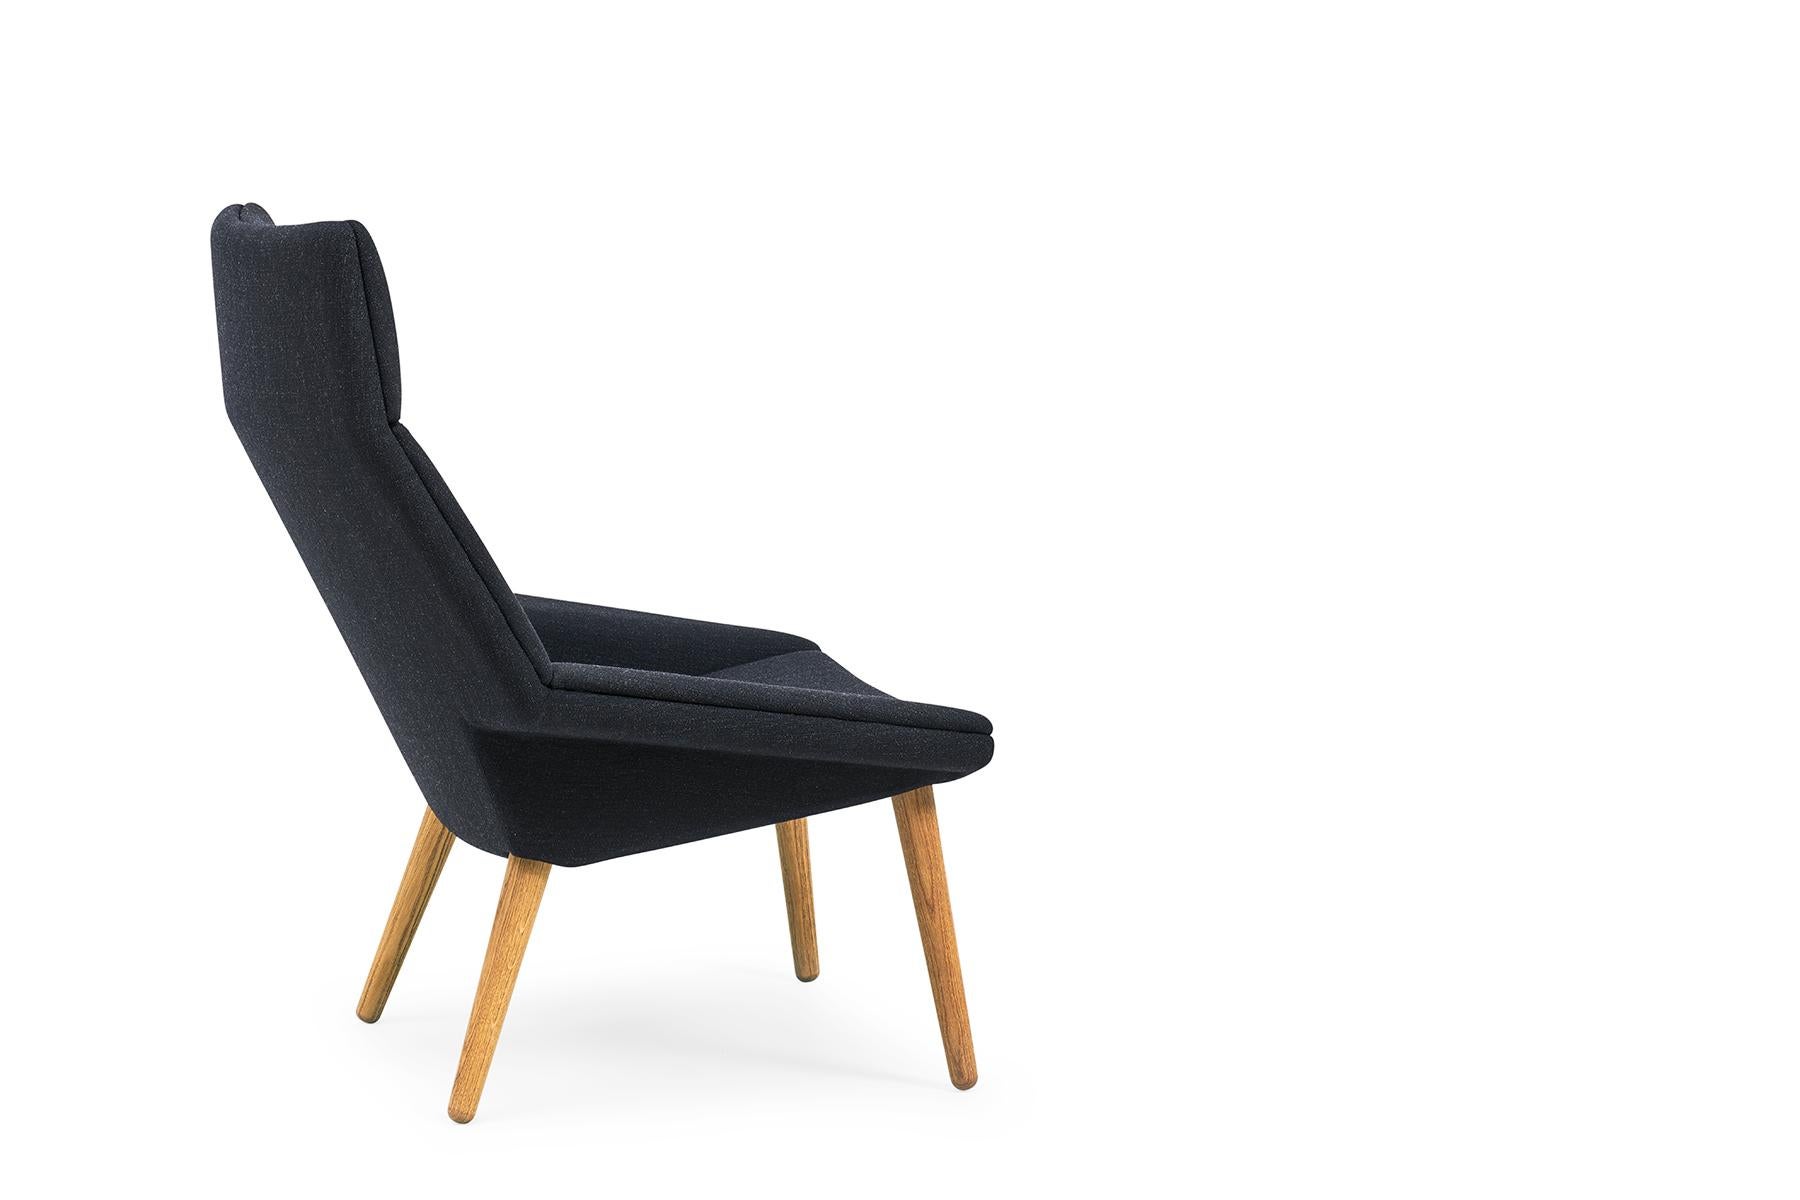 Der 1955 von Nanna & Jørgen Ditzel entworfene Sessel Tux ist eine wunderbare Ergänzung für jedes moderne Zuhause oder Büro. Der Stuhl wird in der GETAMA-Fabrik im dänischen Gedsted von erfahrenen Tischlern nach traditionellen skandinavischen